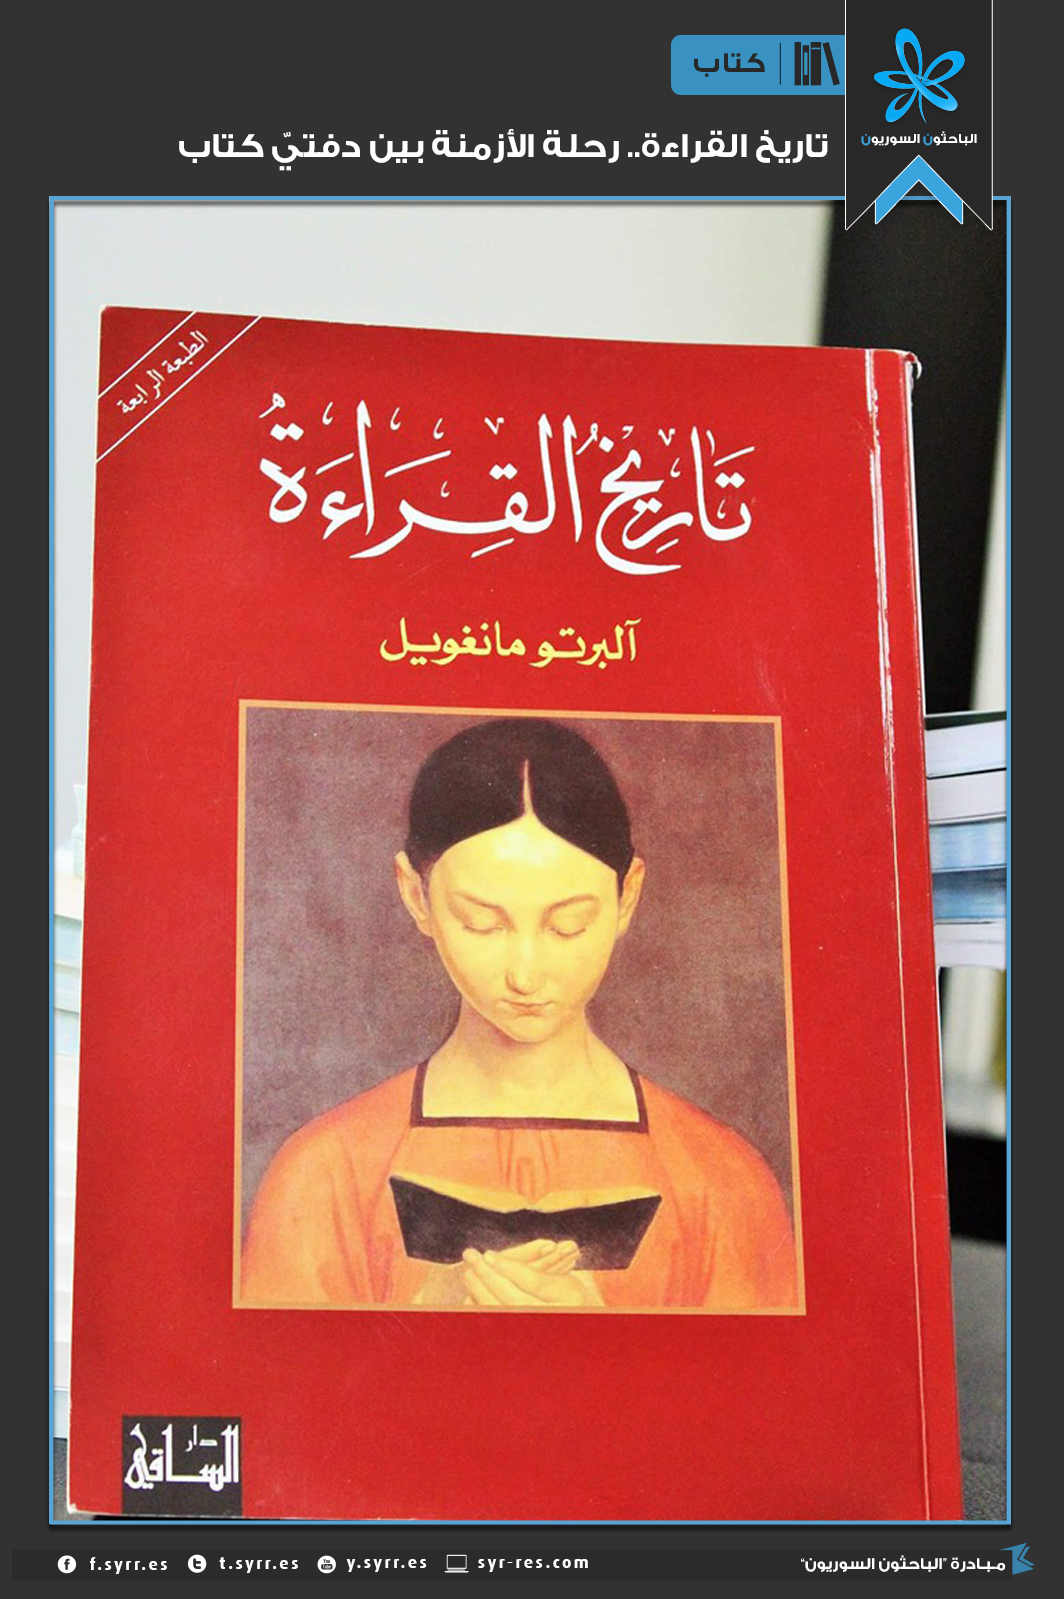 الباحثون السوريون تاريخ القراءة رحلة الأزمنة بين دفتي كتاب